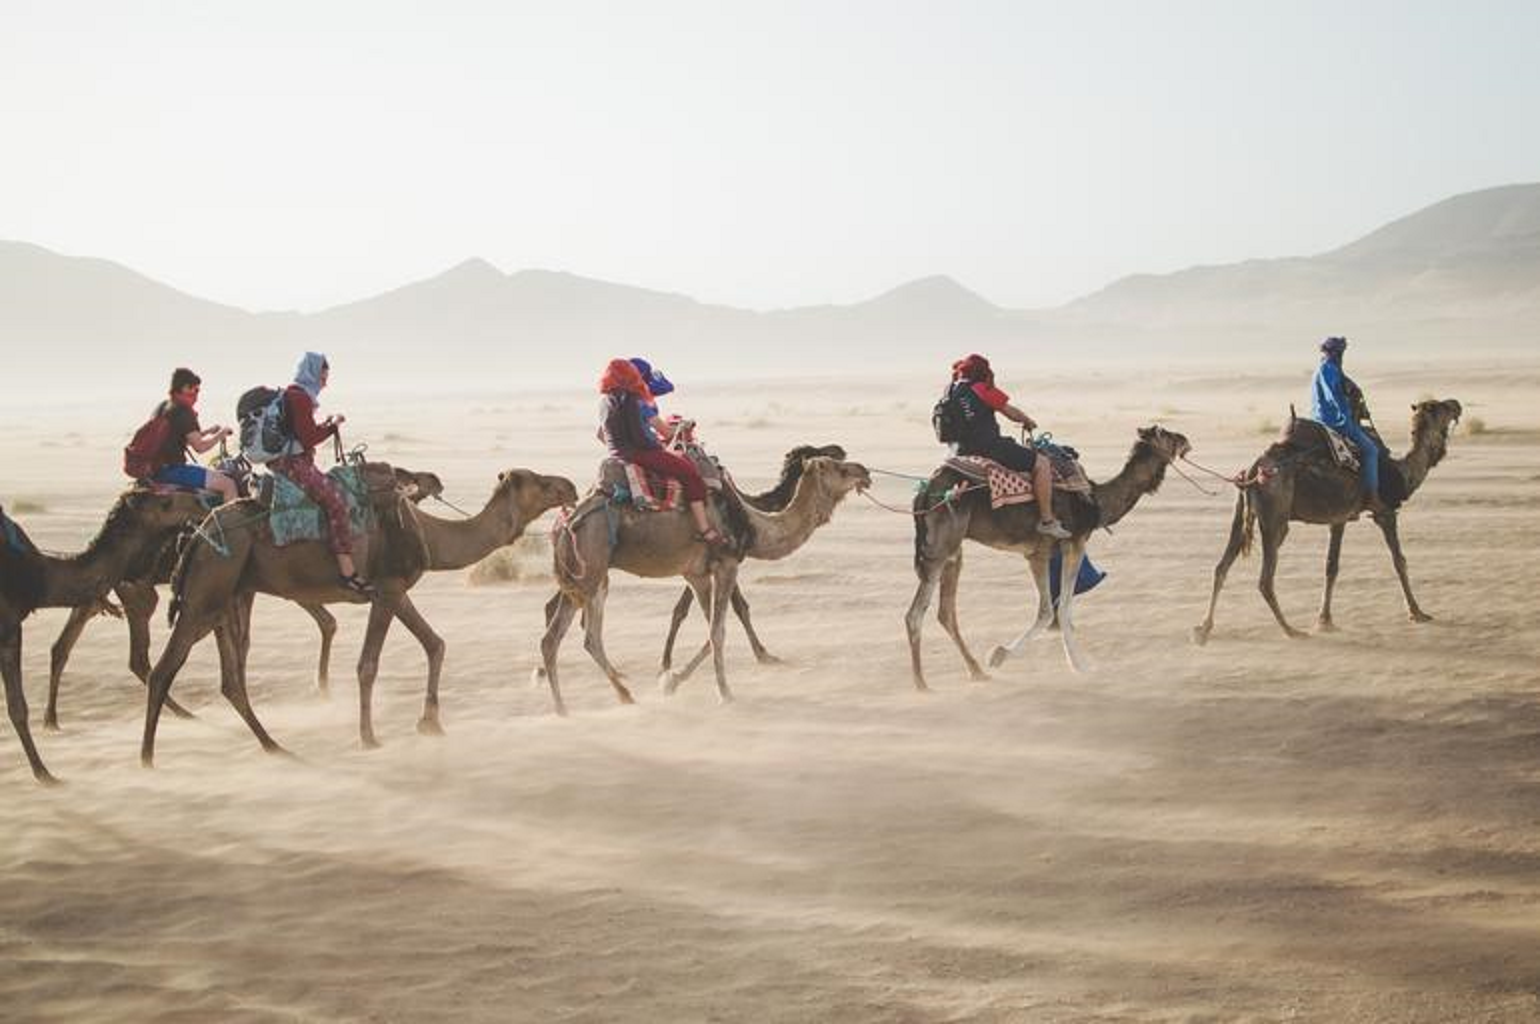 Un groupe de personnes chevauchant des chameaux dans le d&eaucutesert.